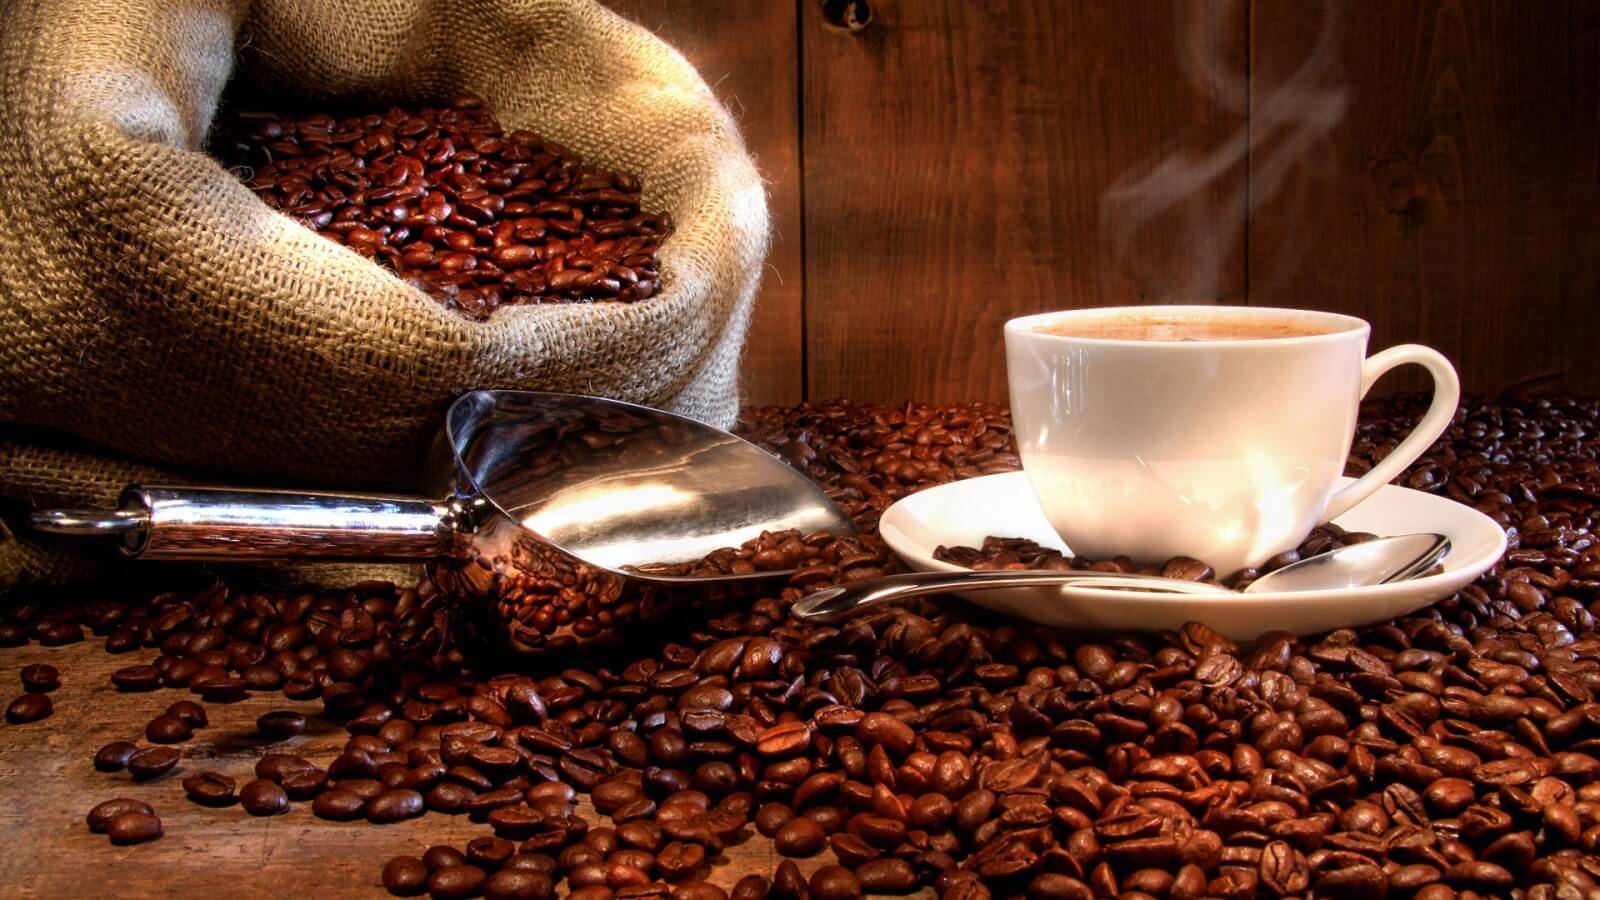 الفوائد الصحية للقهوة